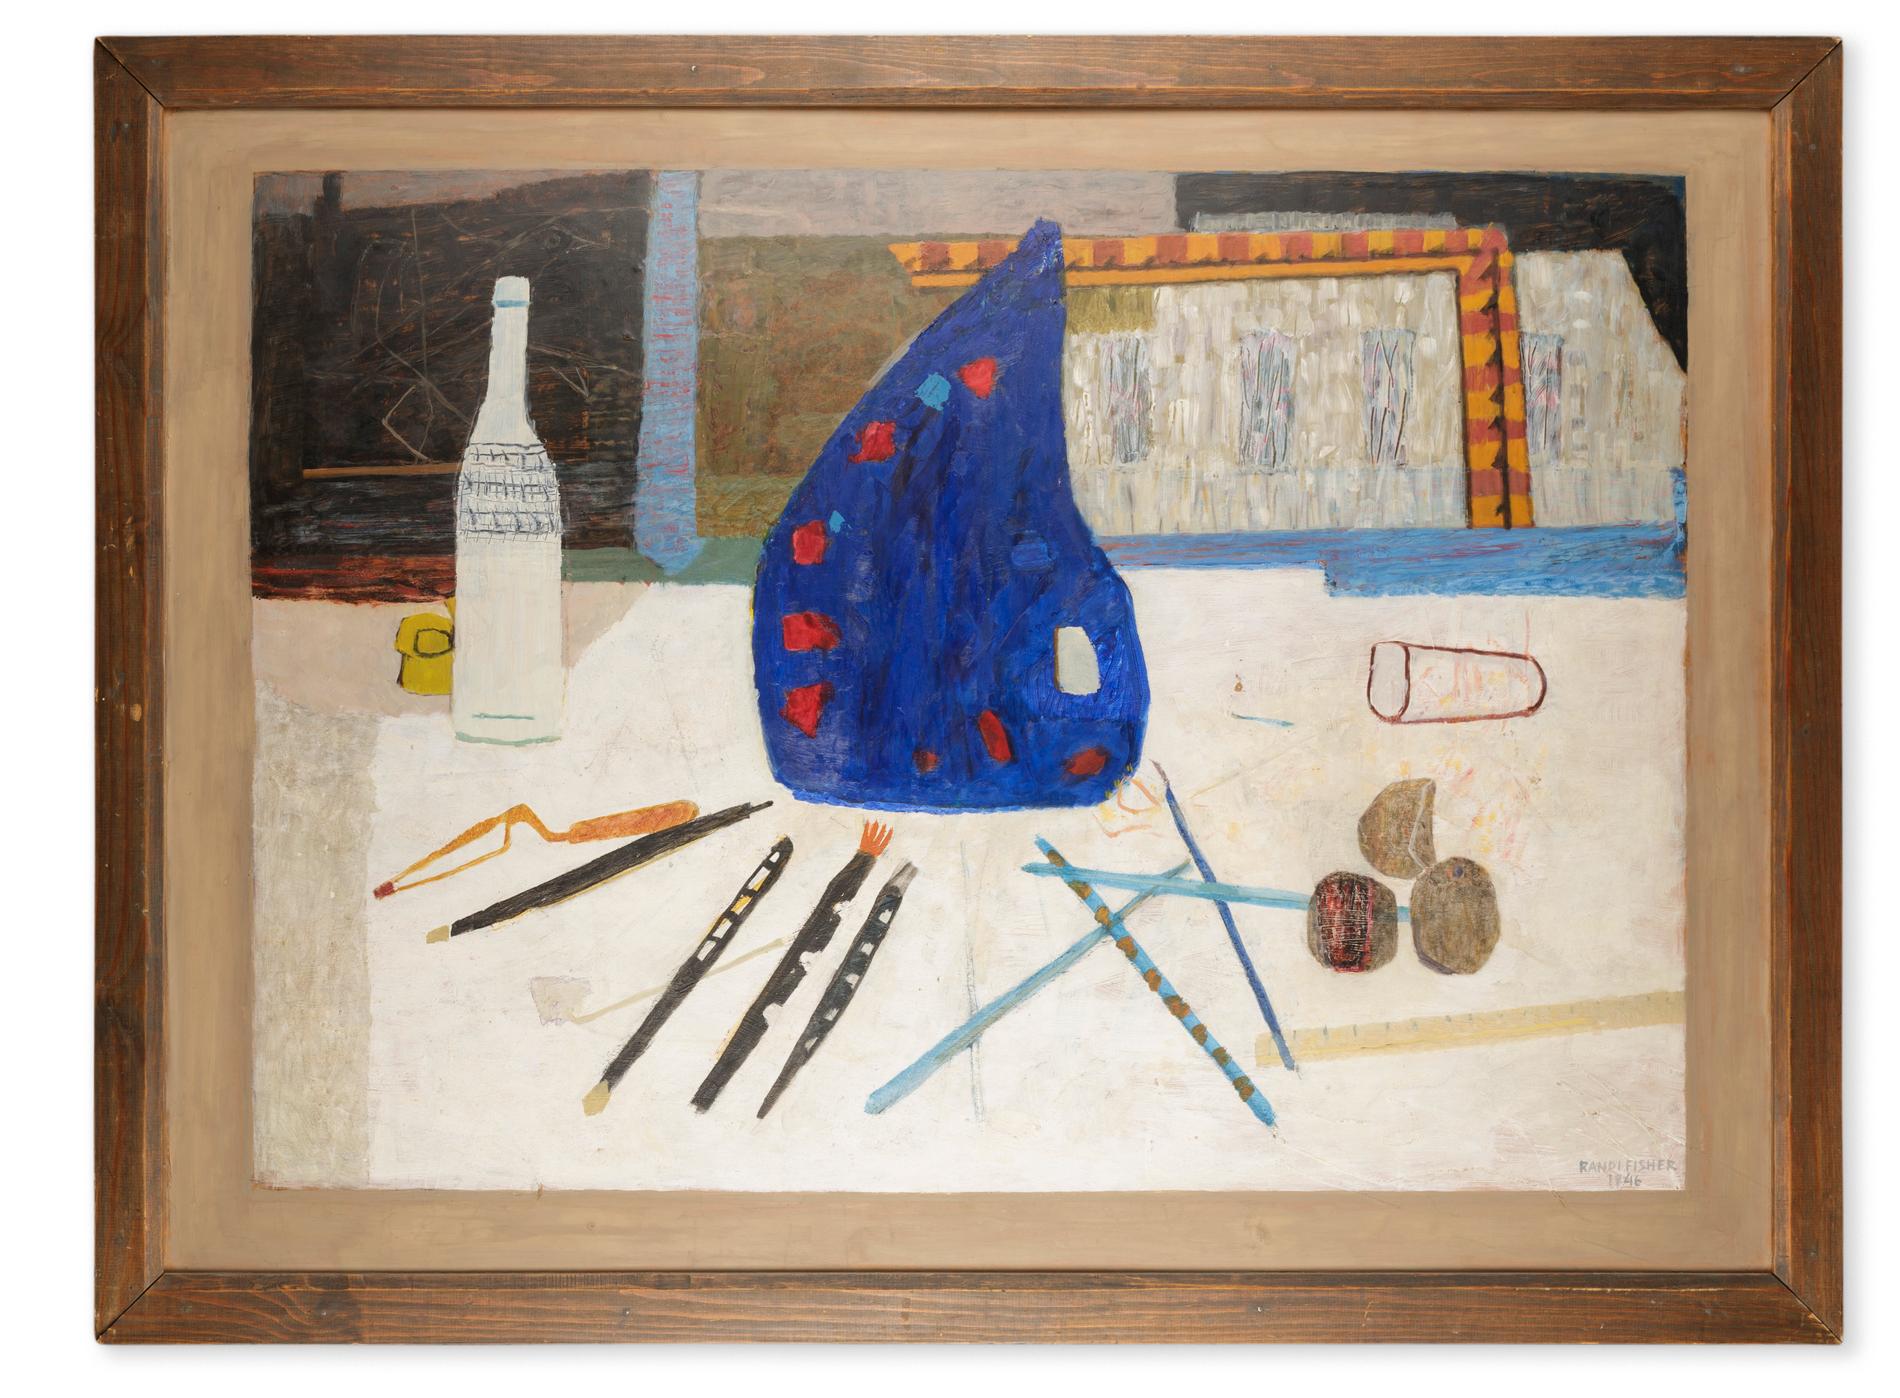 Randi Fischer, ”Vitt målarbord”, 1946.